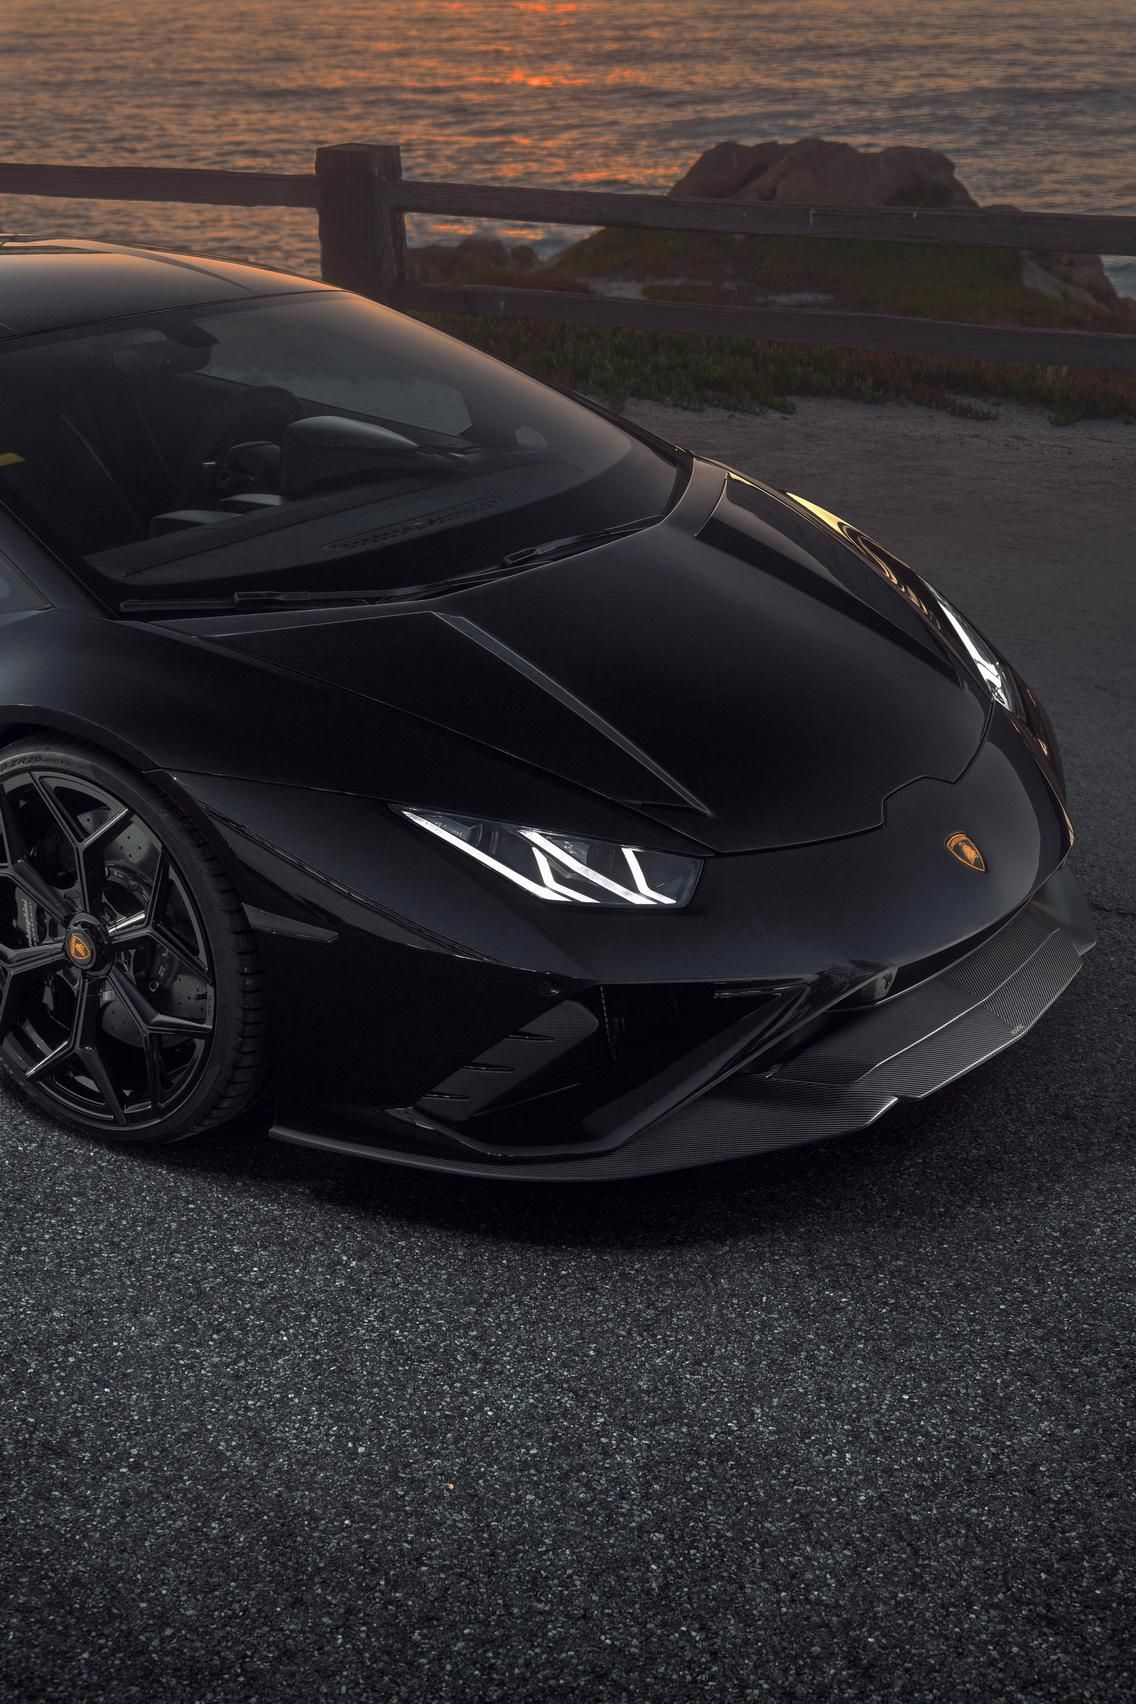 2021 Lamborghini Huracan EVO by Novitec